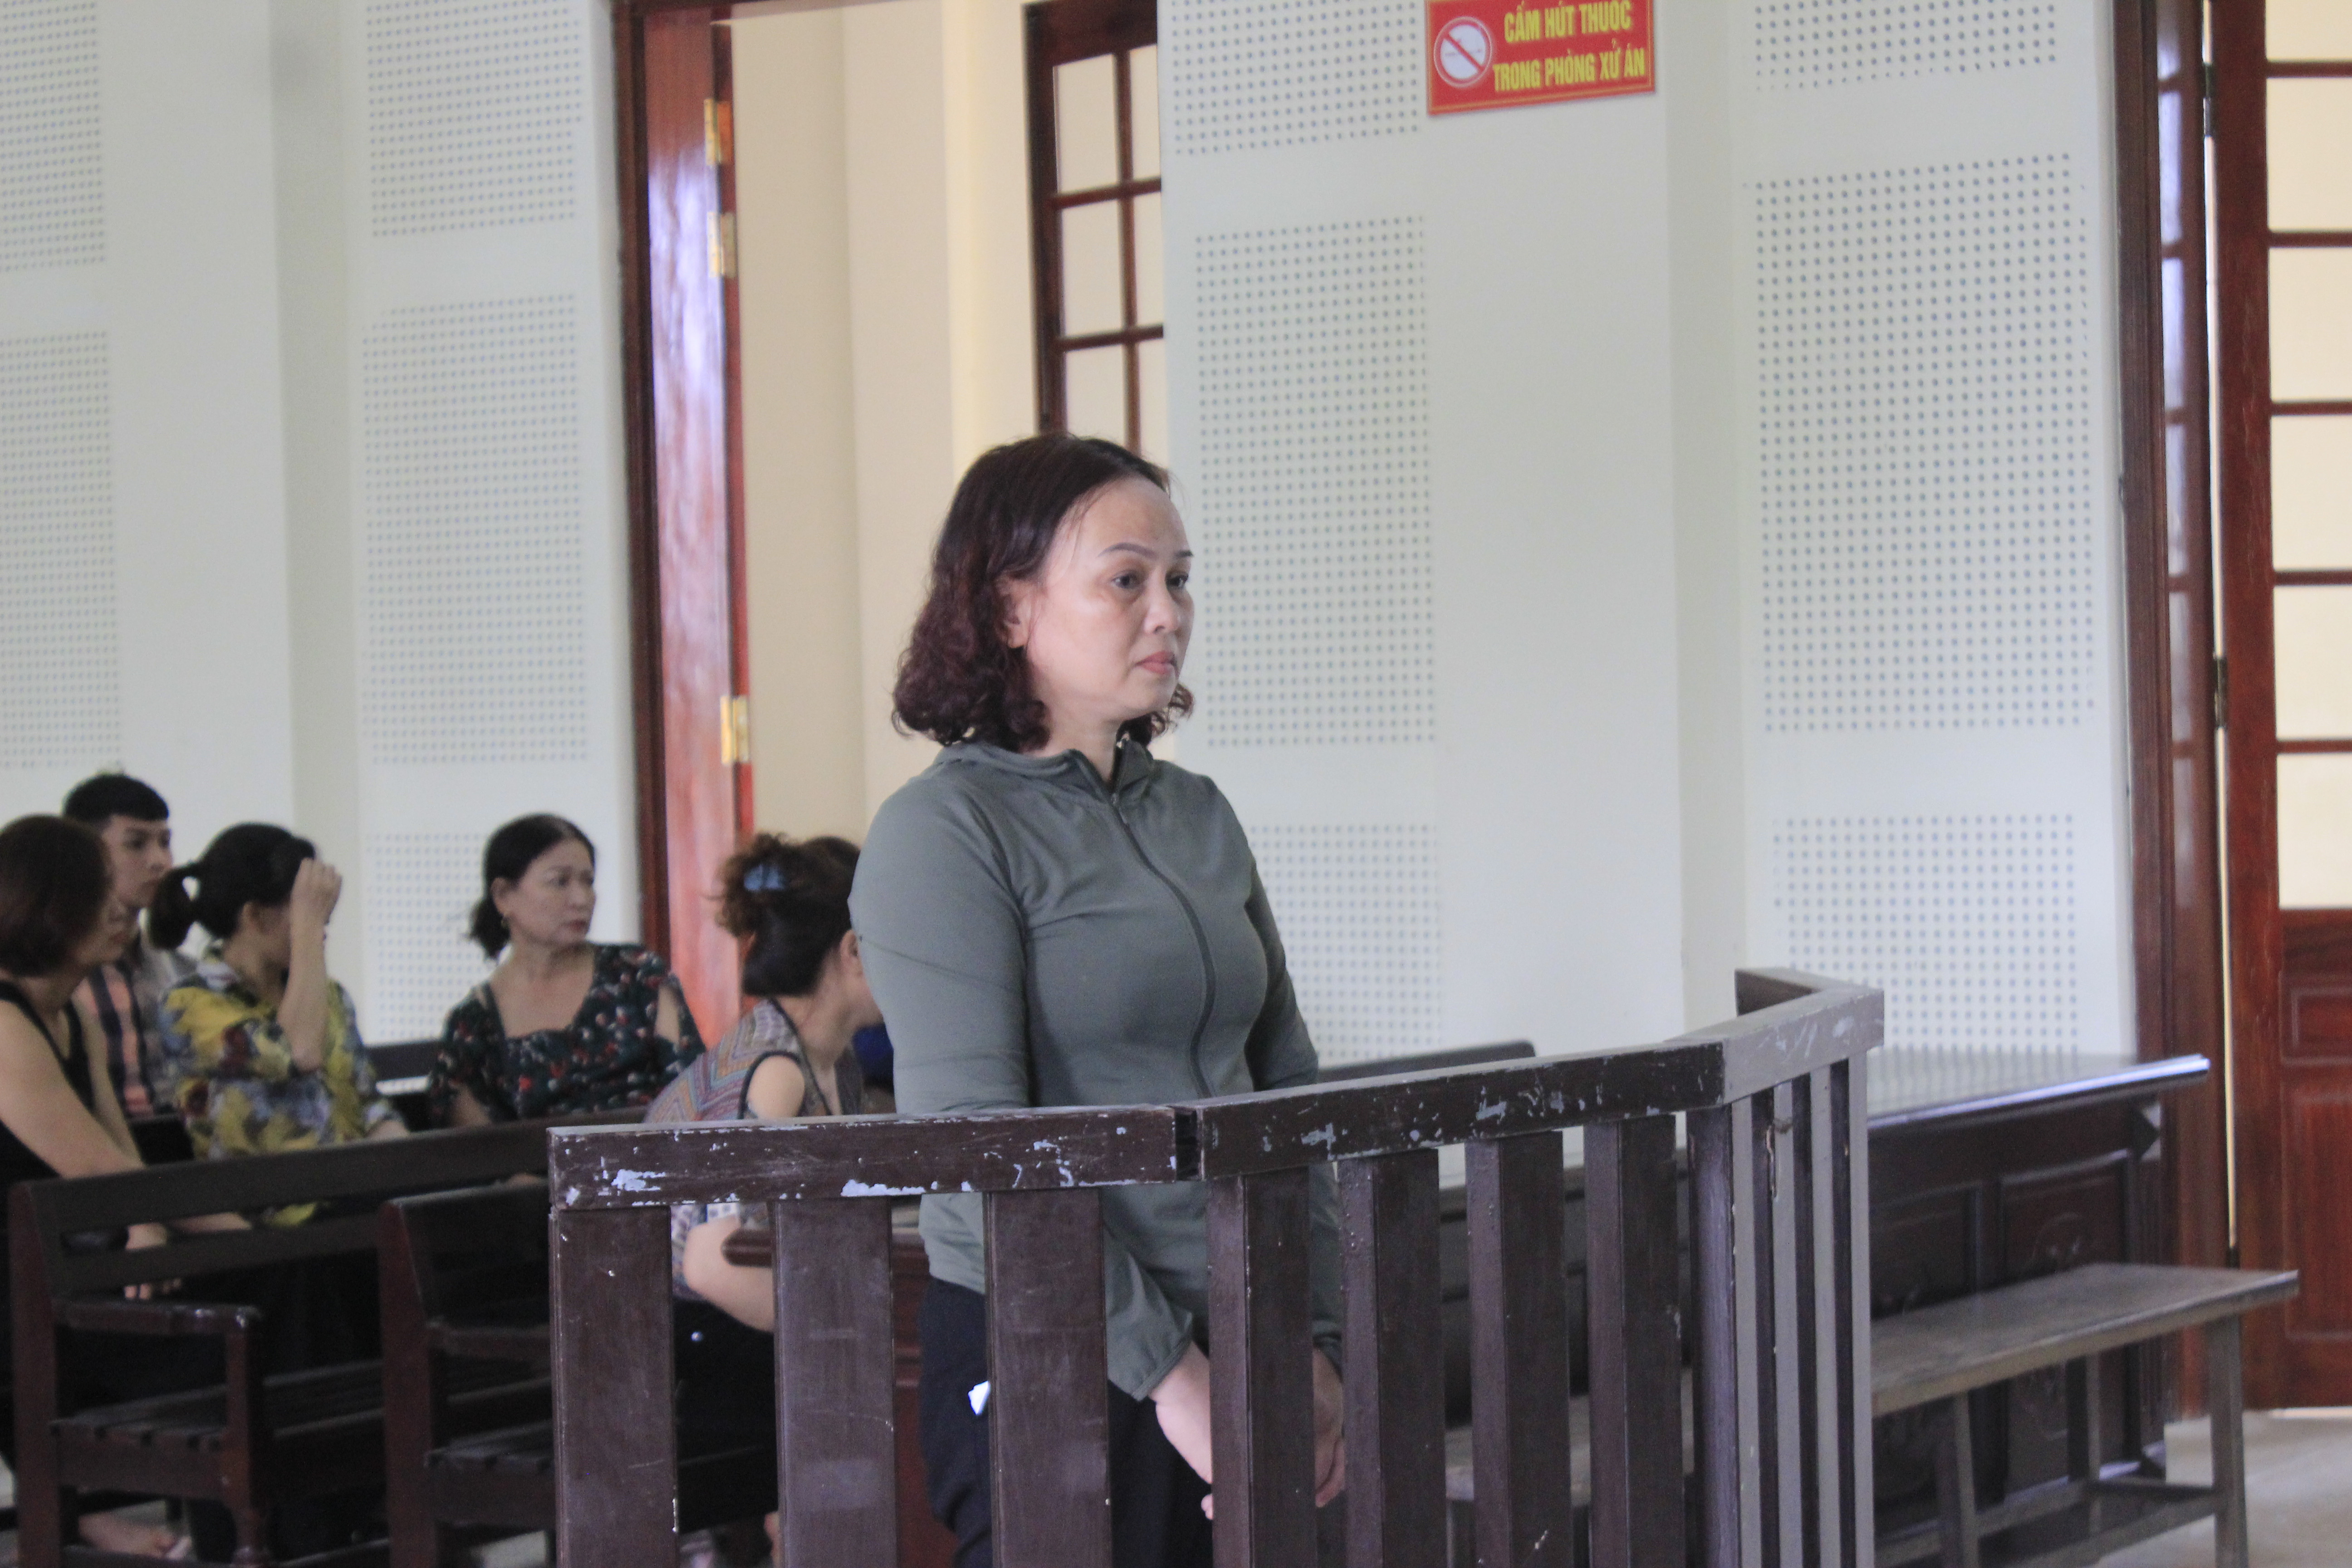 Bị cáo Nguyễn Thị Thủy tại phiên tòa. Ảnh: An Quỳnh.